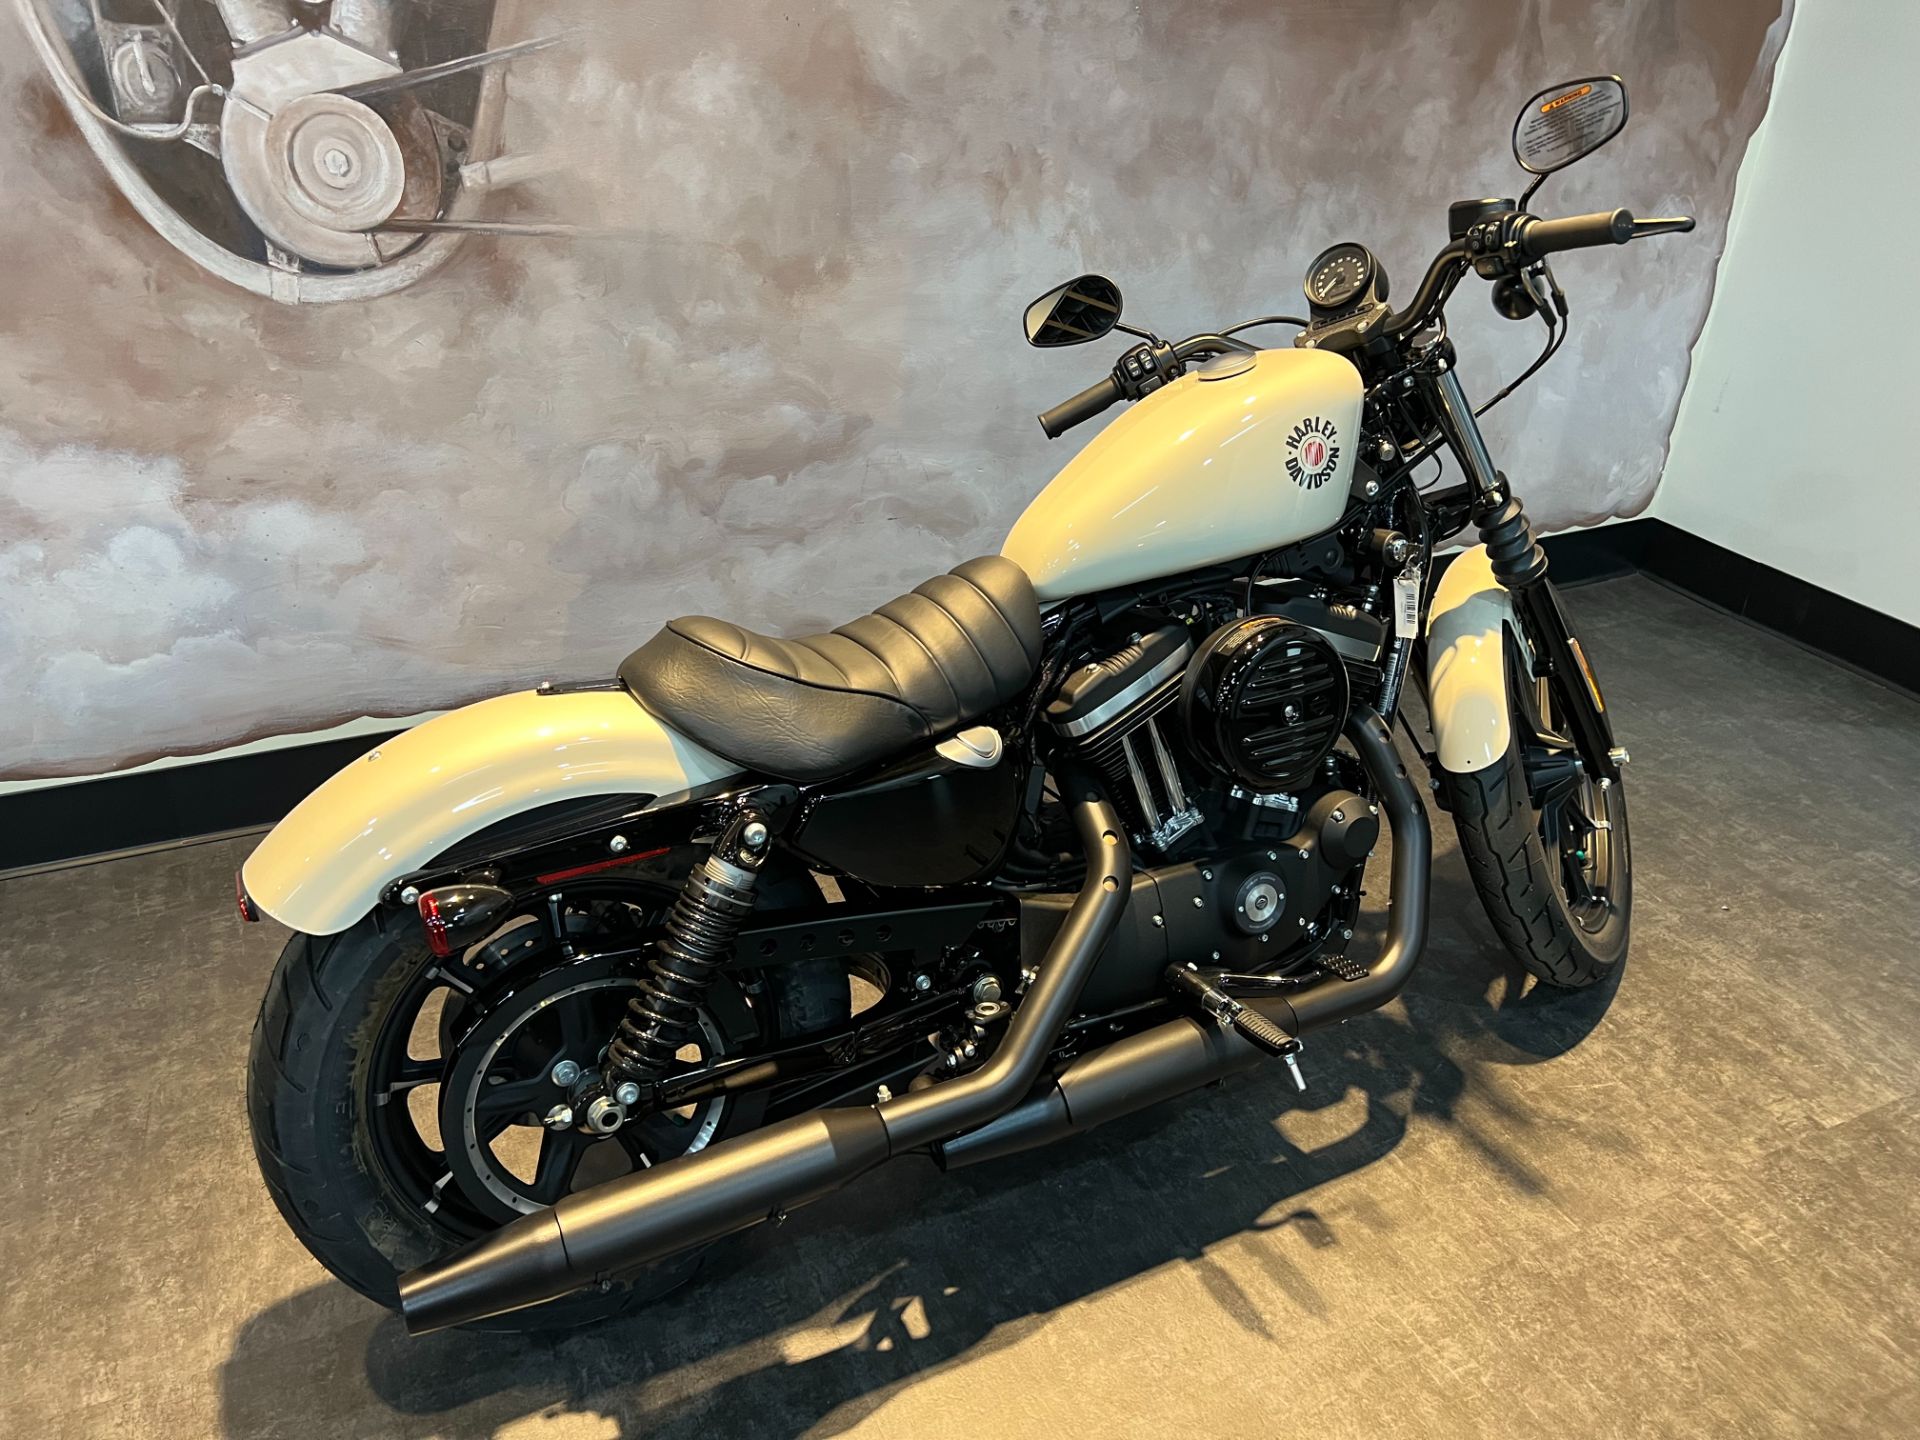 2022 Harley-Davidson Iron 883™ in Colorado Springs, Colorado - Photo 8